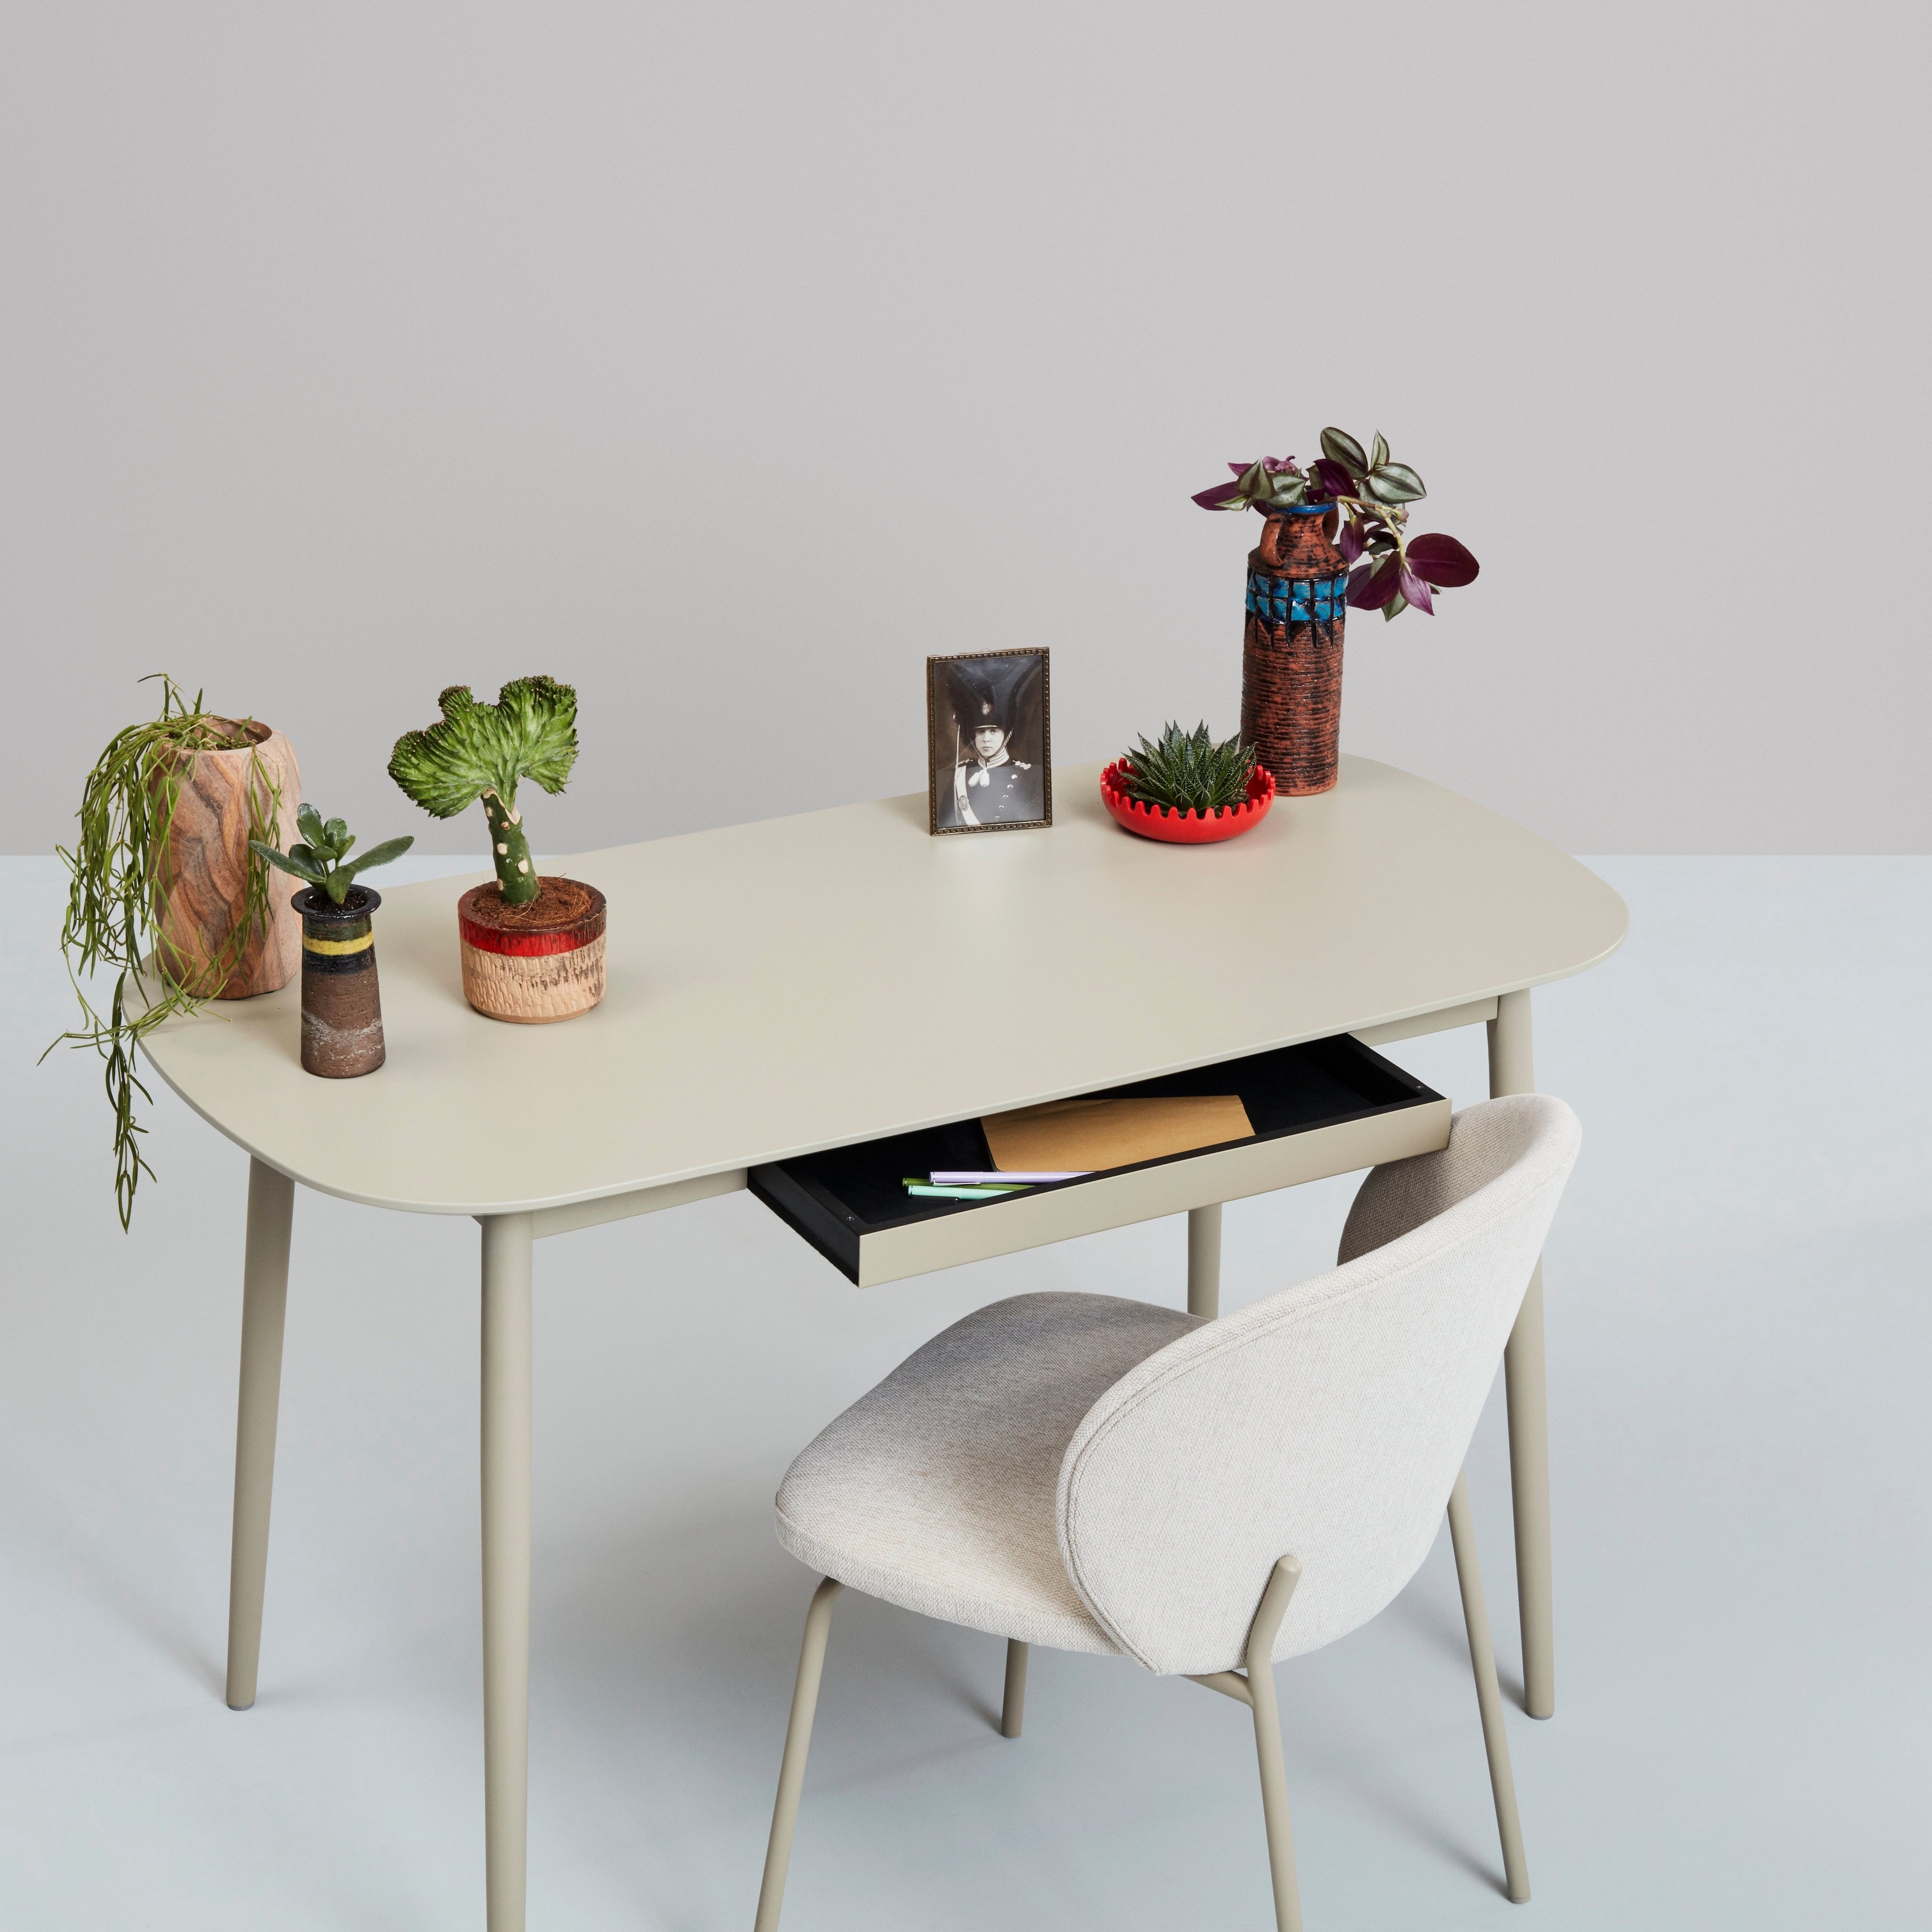 Weißer Schreibtisch mit Pflanzen, Deko-Objekten und einem Stuhl vor neutralem Hintergrund.